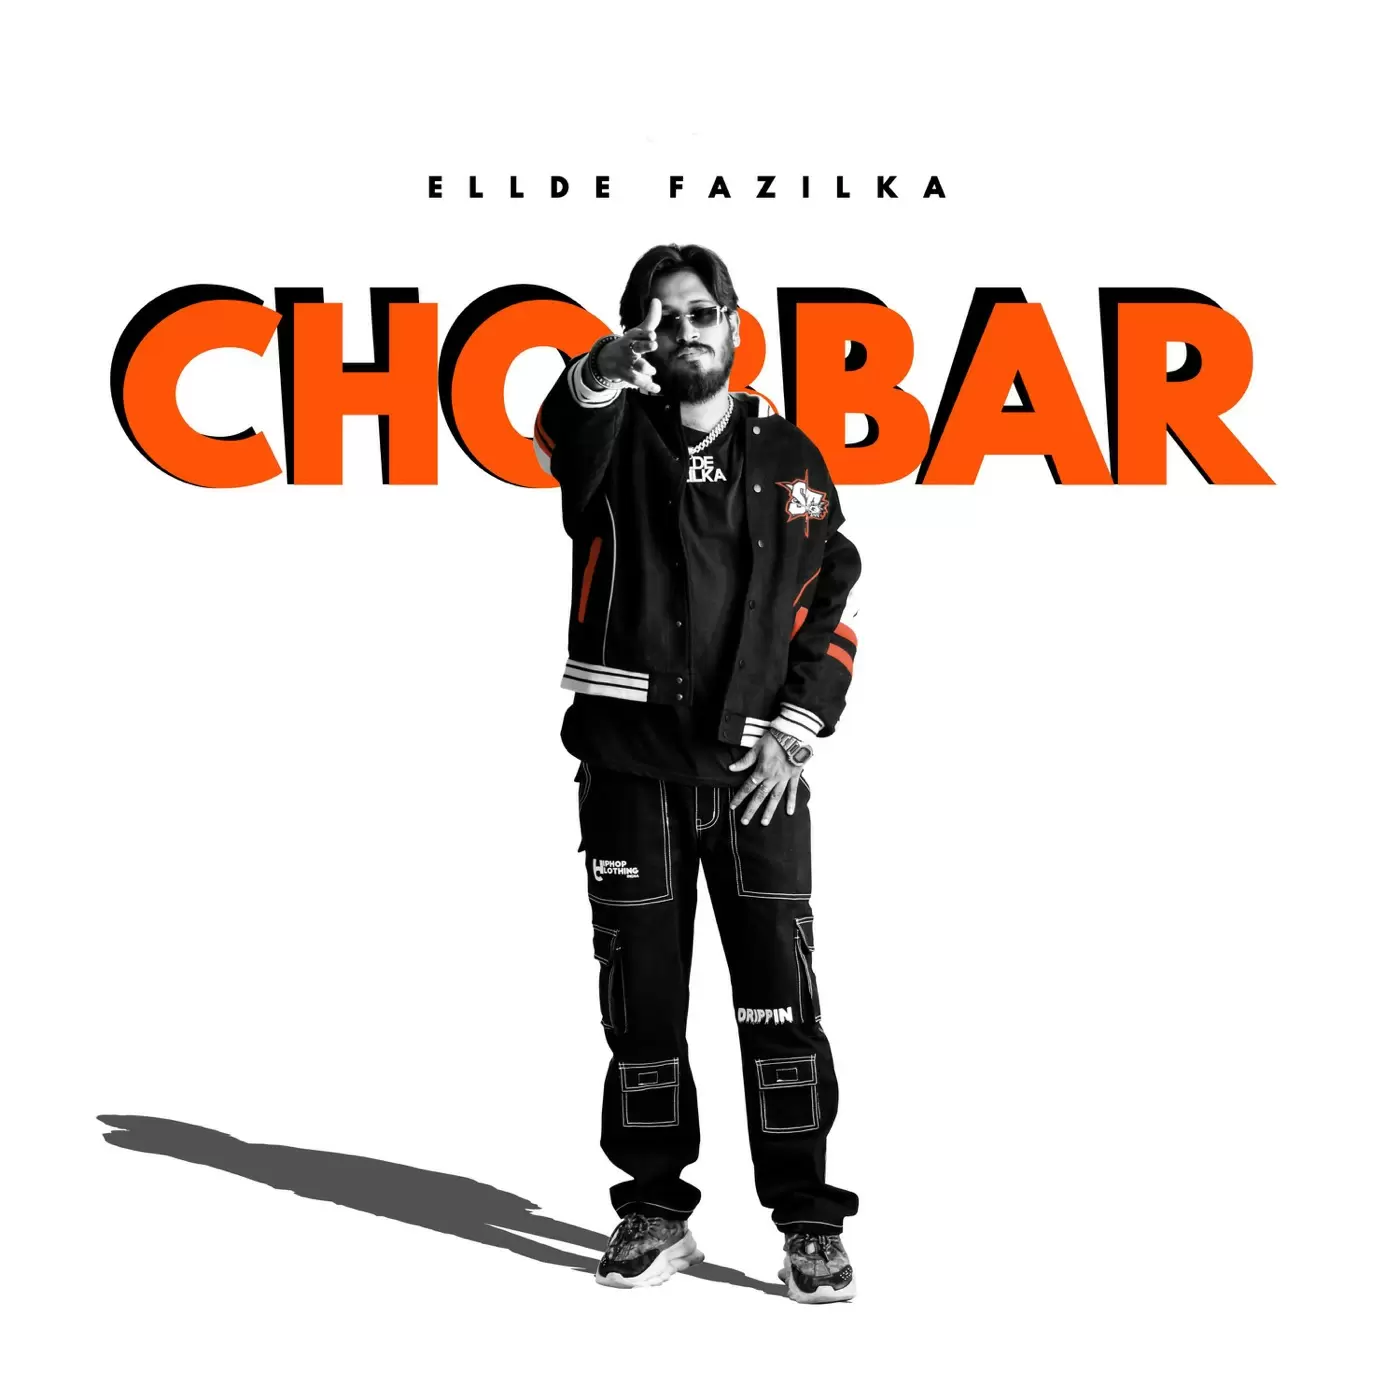 Chobbar Ellde Fazilka Mp3 Download Song - Mr-Punjab